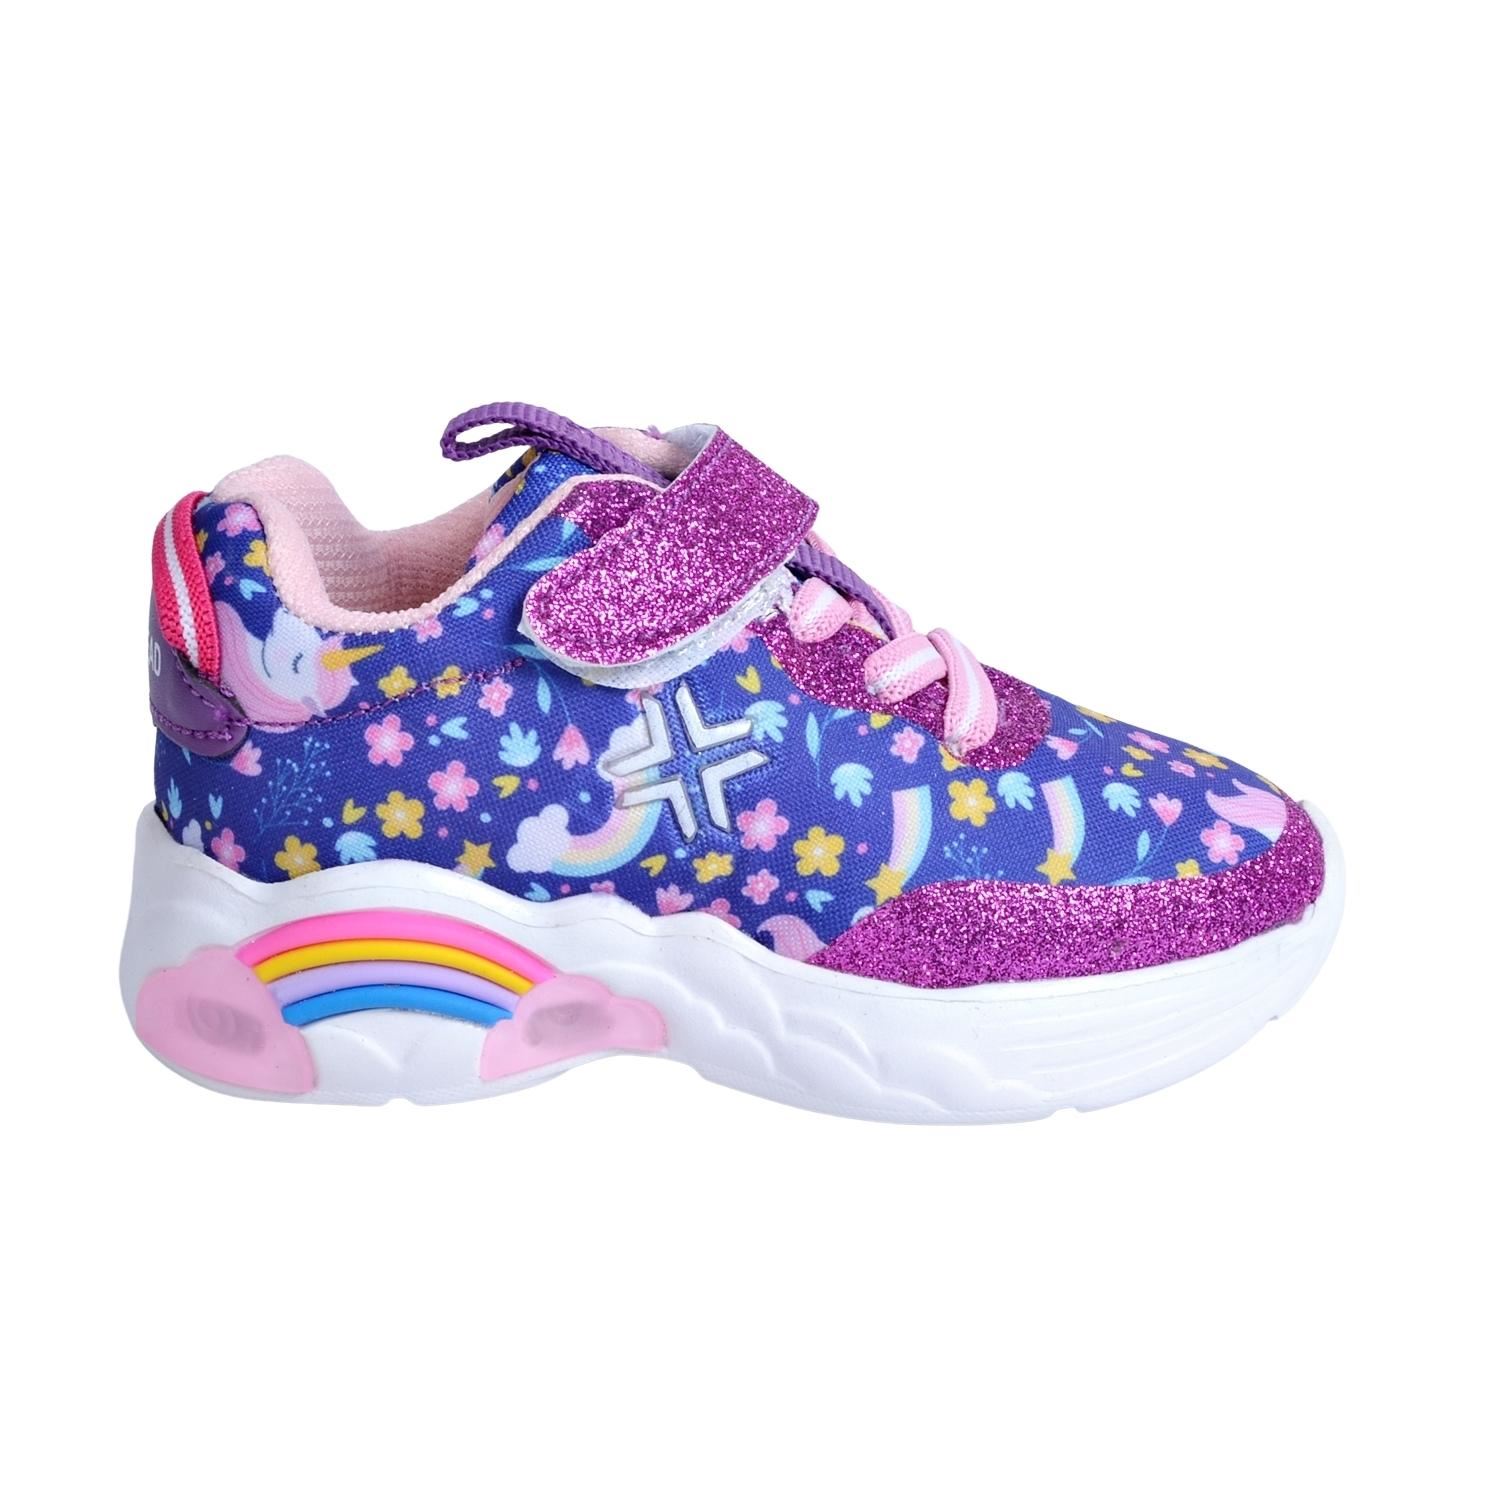 Buckhead 4122 Rainbow Işıklı Çocuk Spor Ayakkabı